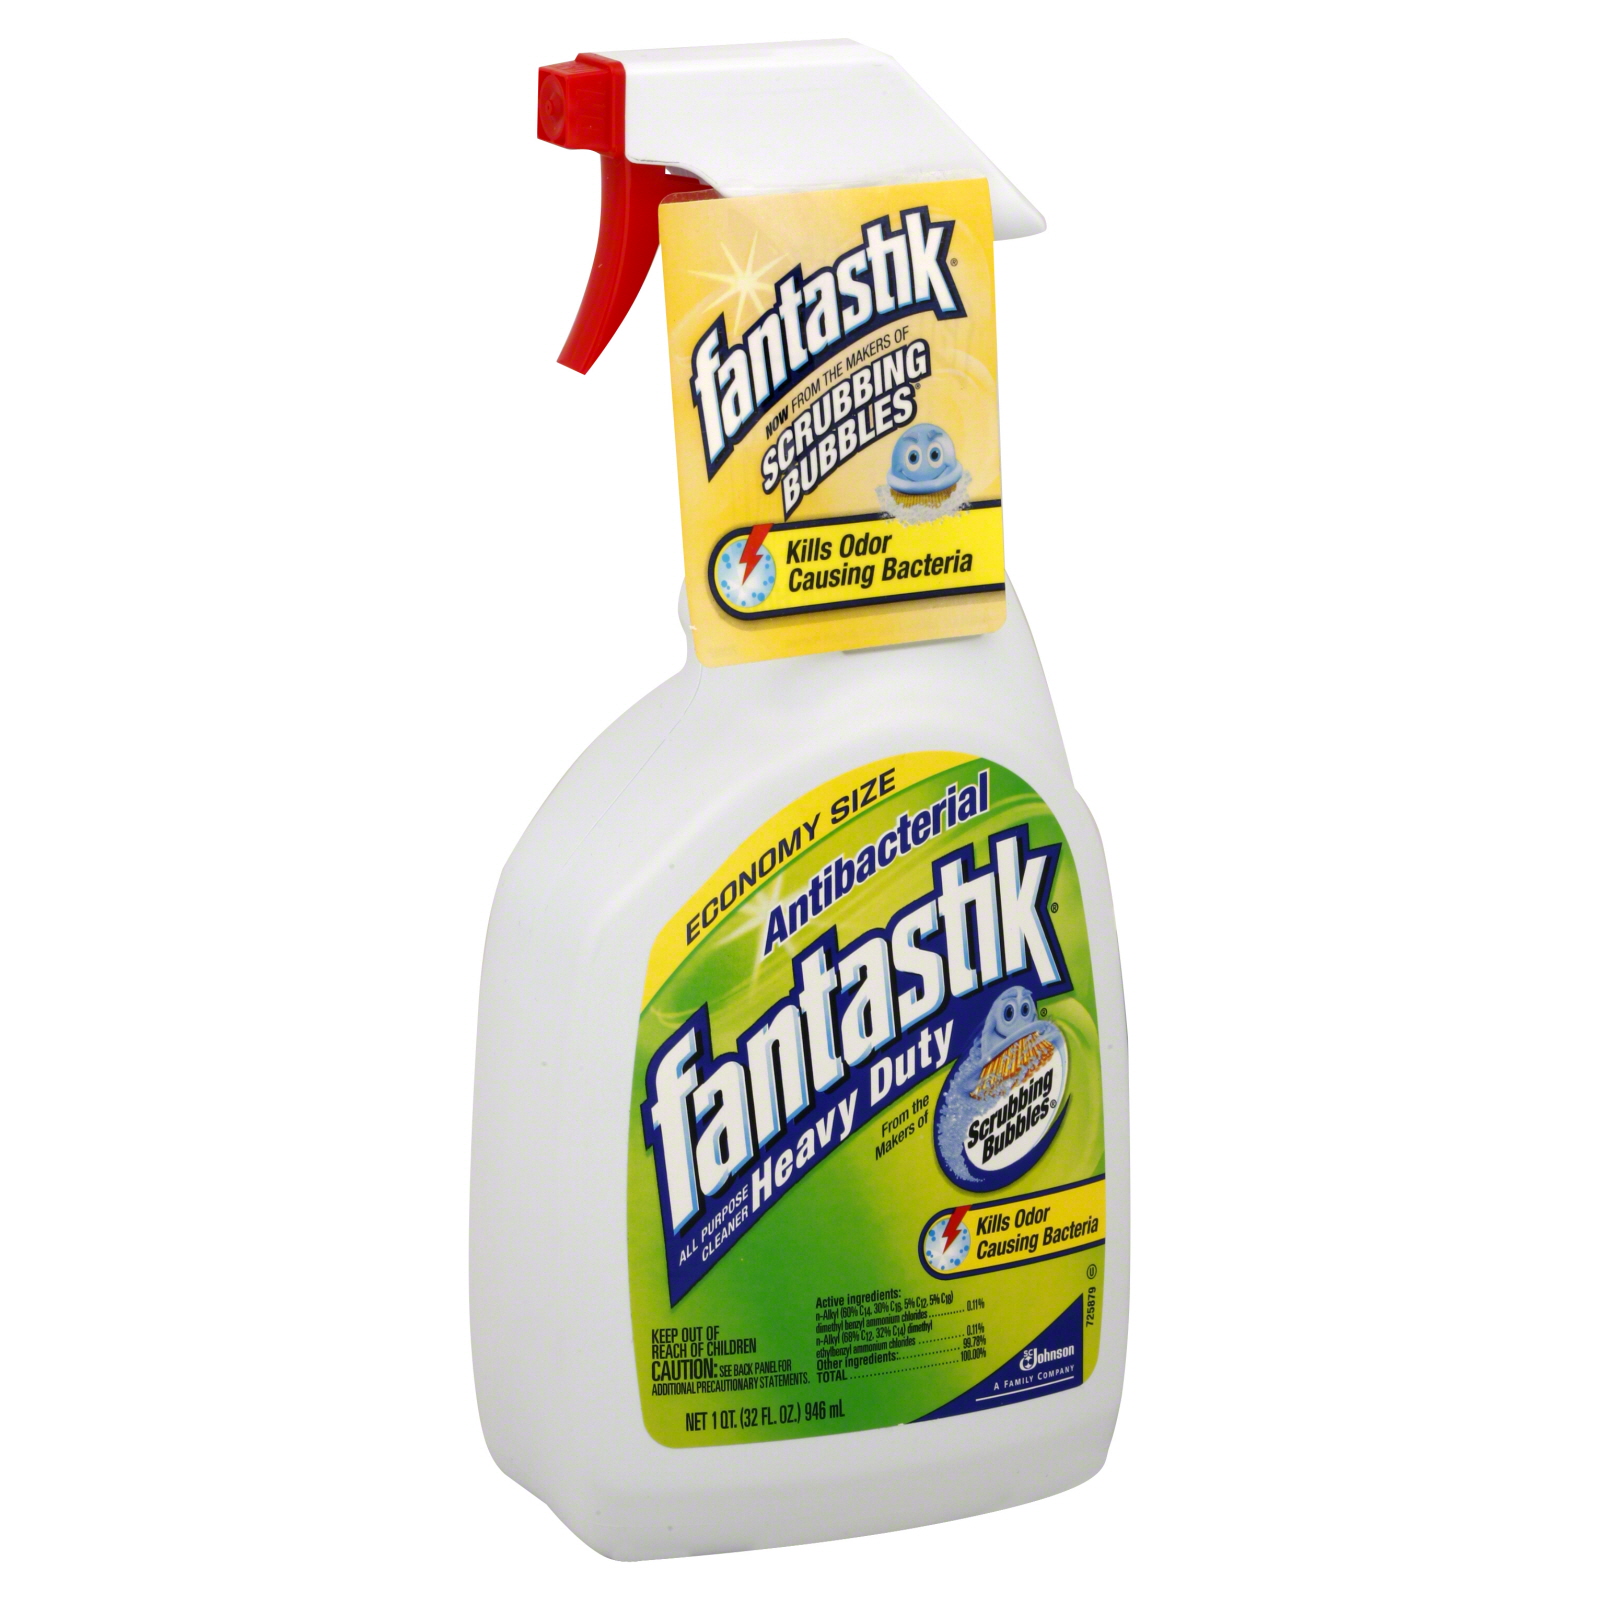 Fantastik Antibacterial All Purpose Cleaner 32 fl oz